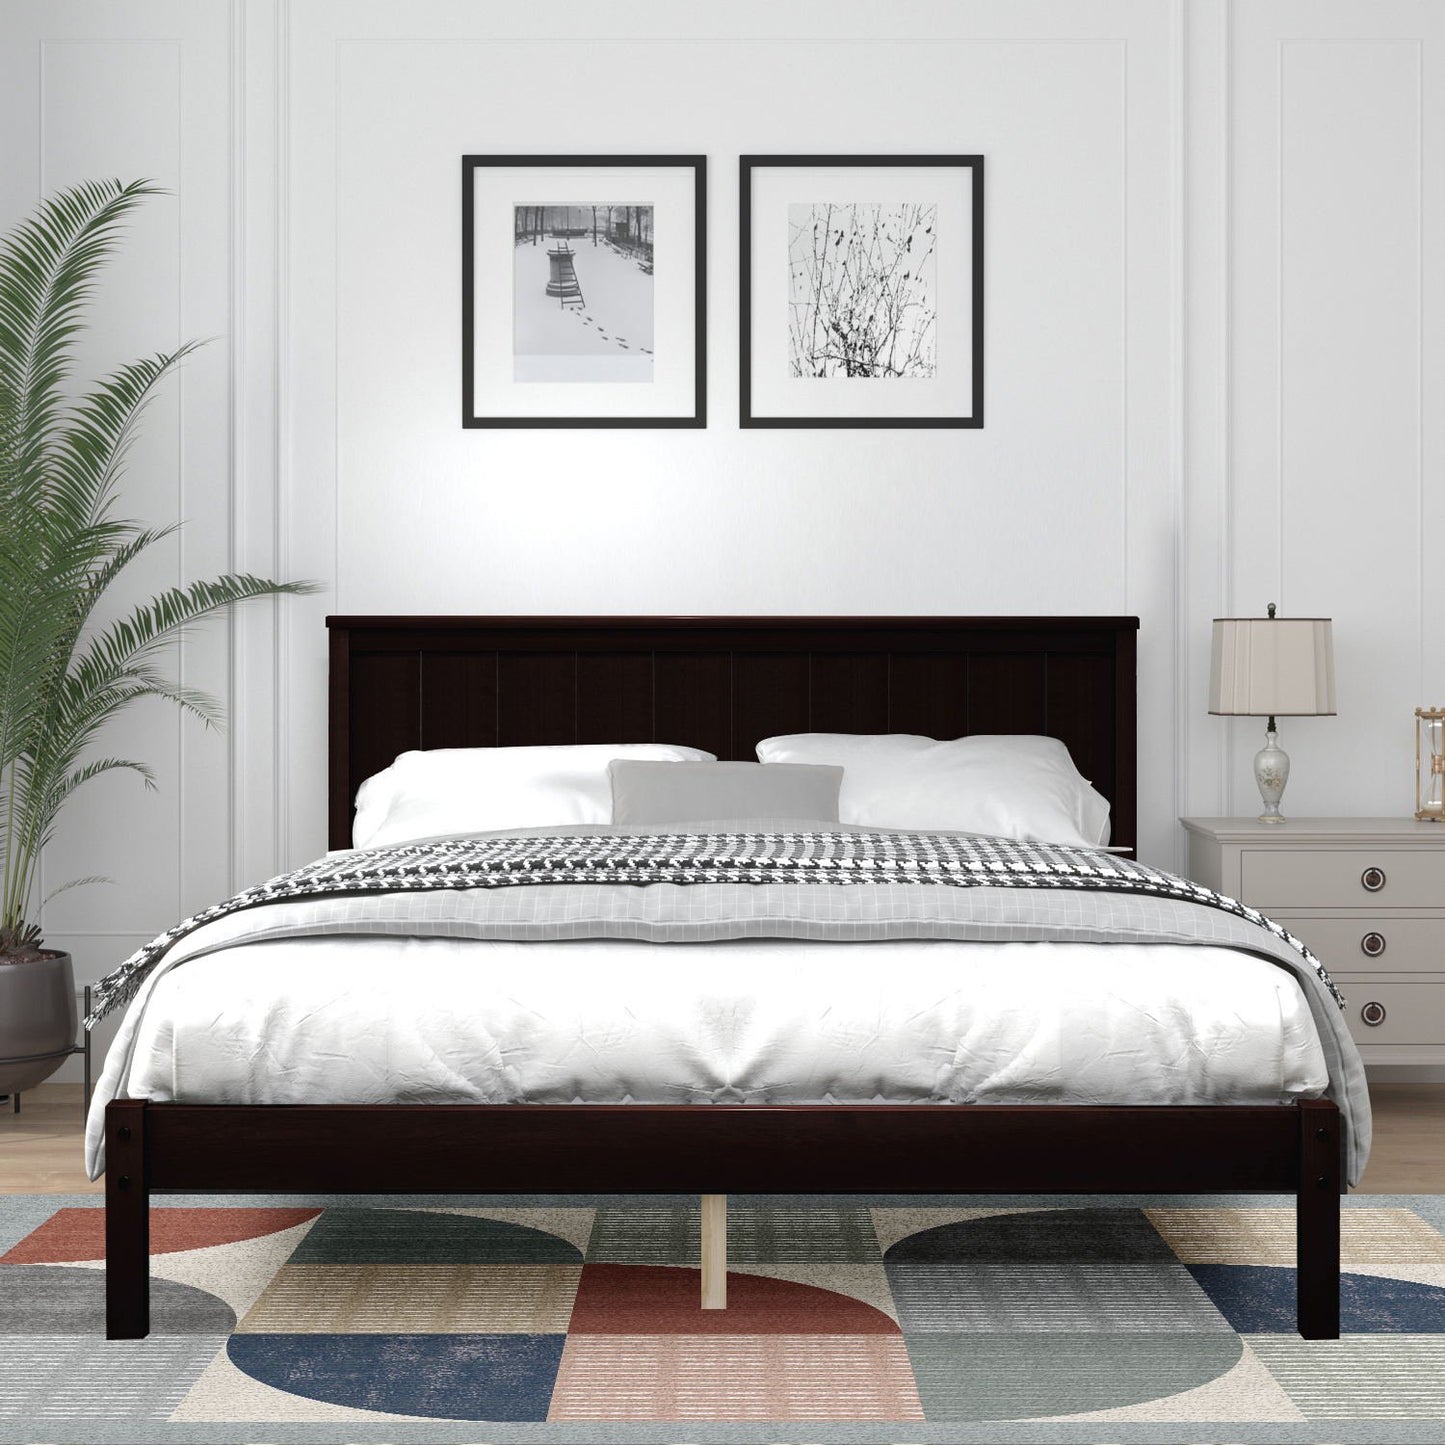 Full Size Bed frame, Wooden Bed Frame with Headboard, Full Bed Frame for Kids Adults, Full Size Bed Frame for Bedroom, Espresso, LJ2452